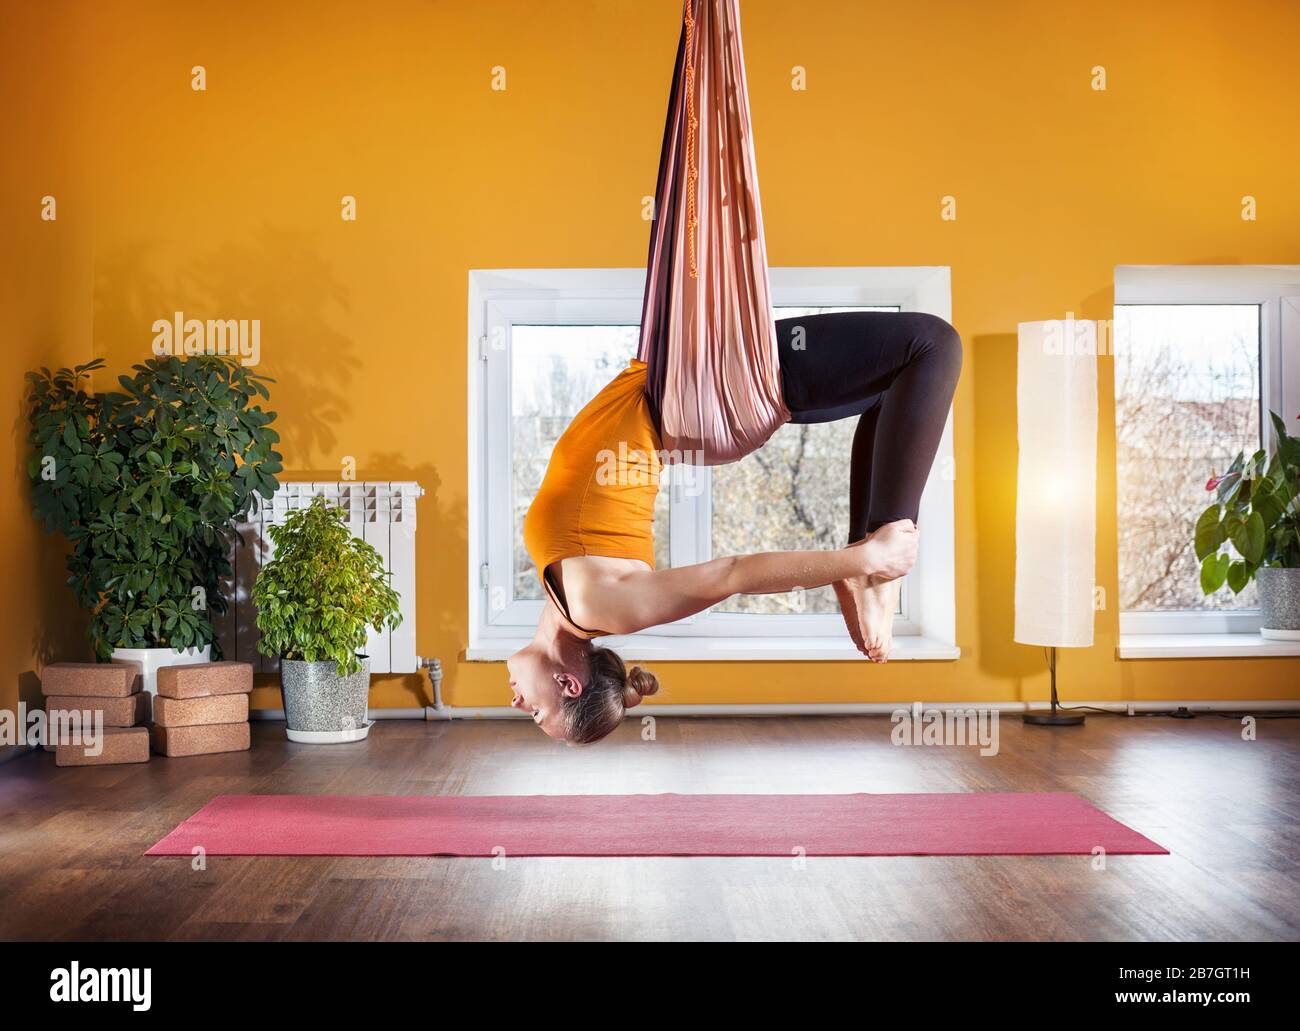 Junge Frau, die nach hinten biegen Position im Studio mit gelben Wänden Antigravity Yoga machen Stockfoto